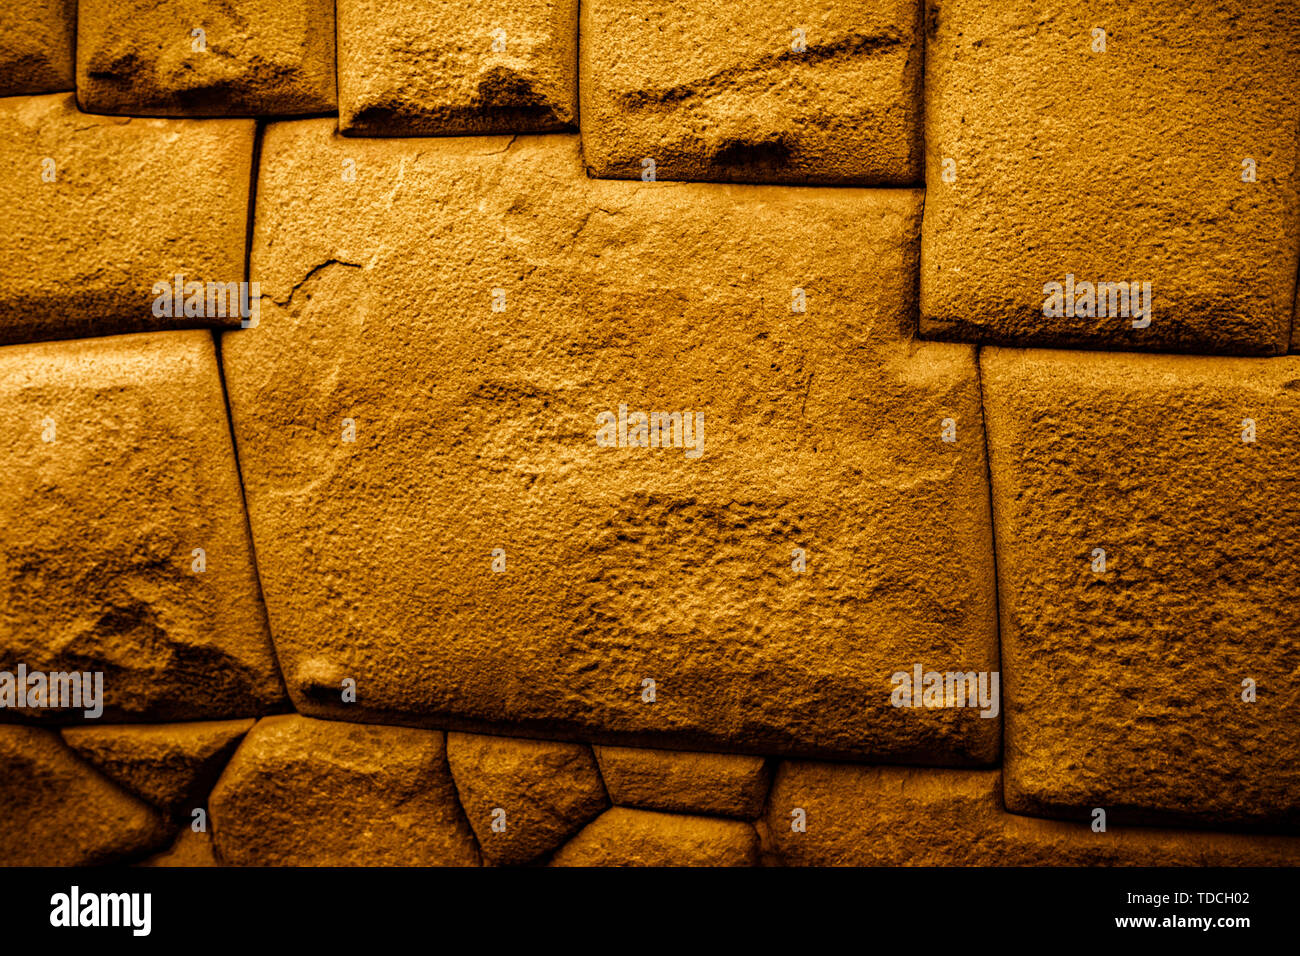 La pierre angulaire 12 célèbre couper précisément et parfaitement assemblé par les Incas dans le mur dans la ville de Cusco au Pérou. Attraction touristique. Banque D'Images